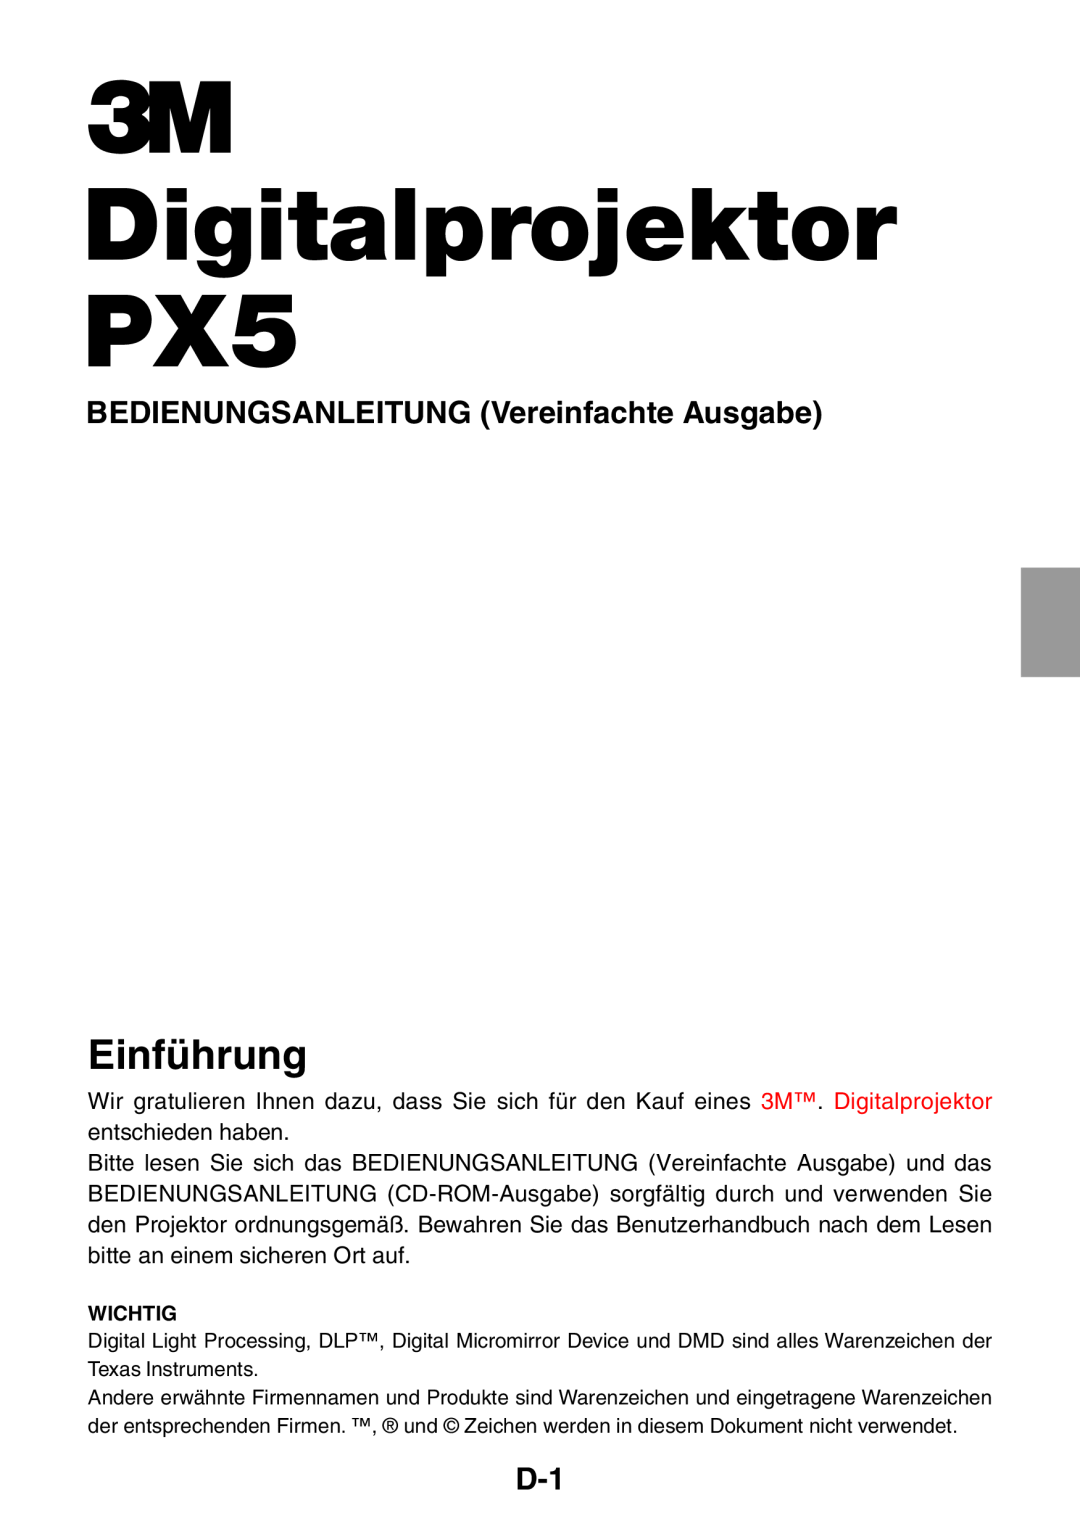 3M user manual Digitalprojektor PX5, Einführung, BEDIENUNGSANLEITUNG Vereinfachte Ausgabe 